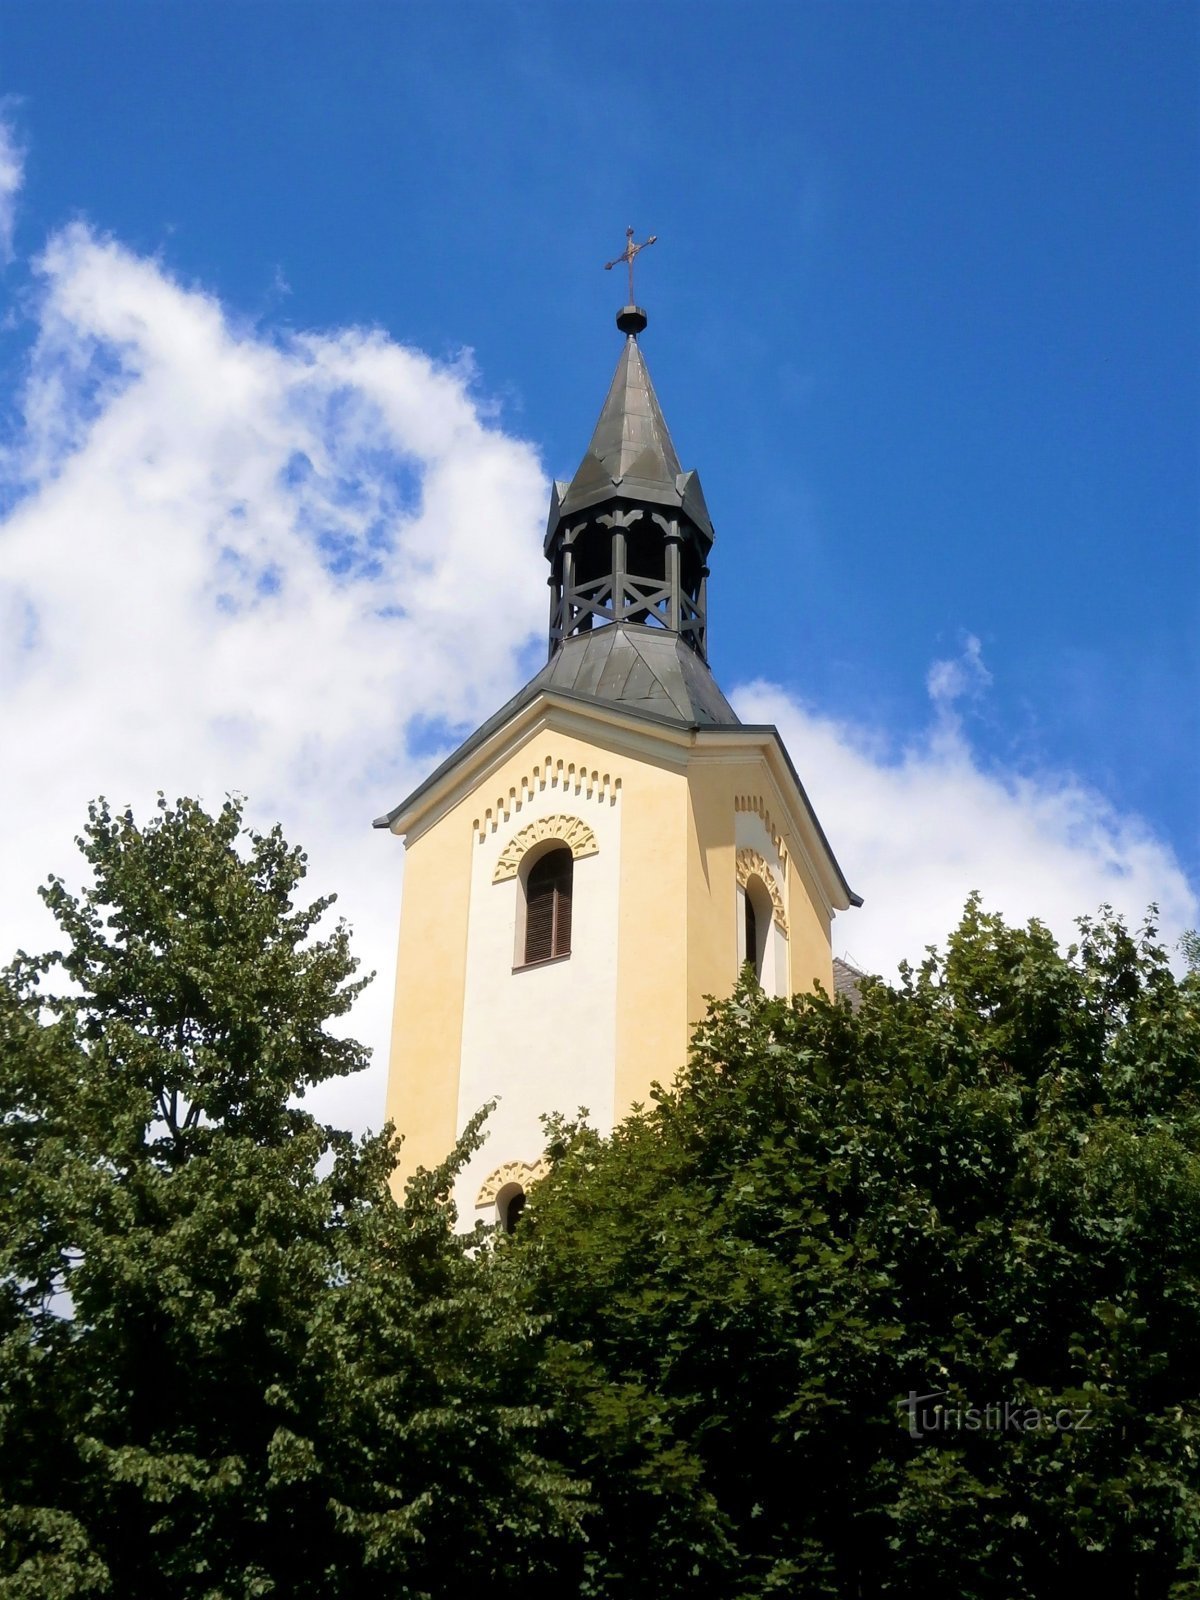 Церква св. Варфоломій (Batňovice)